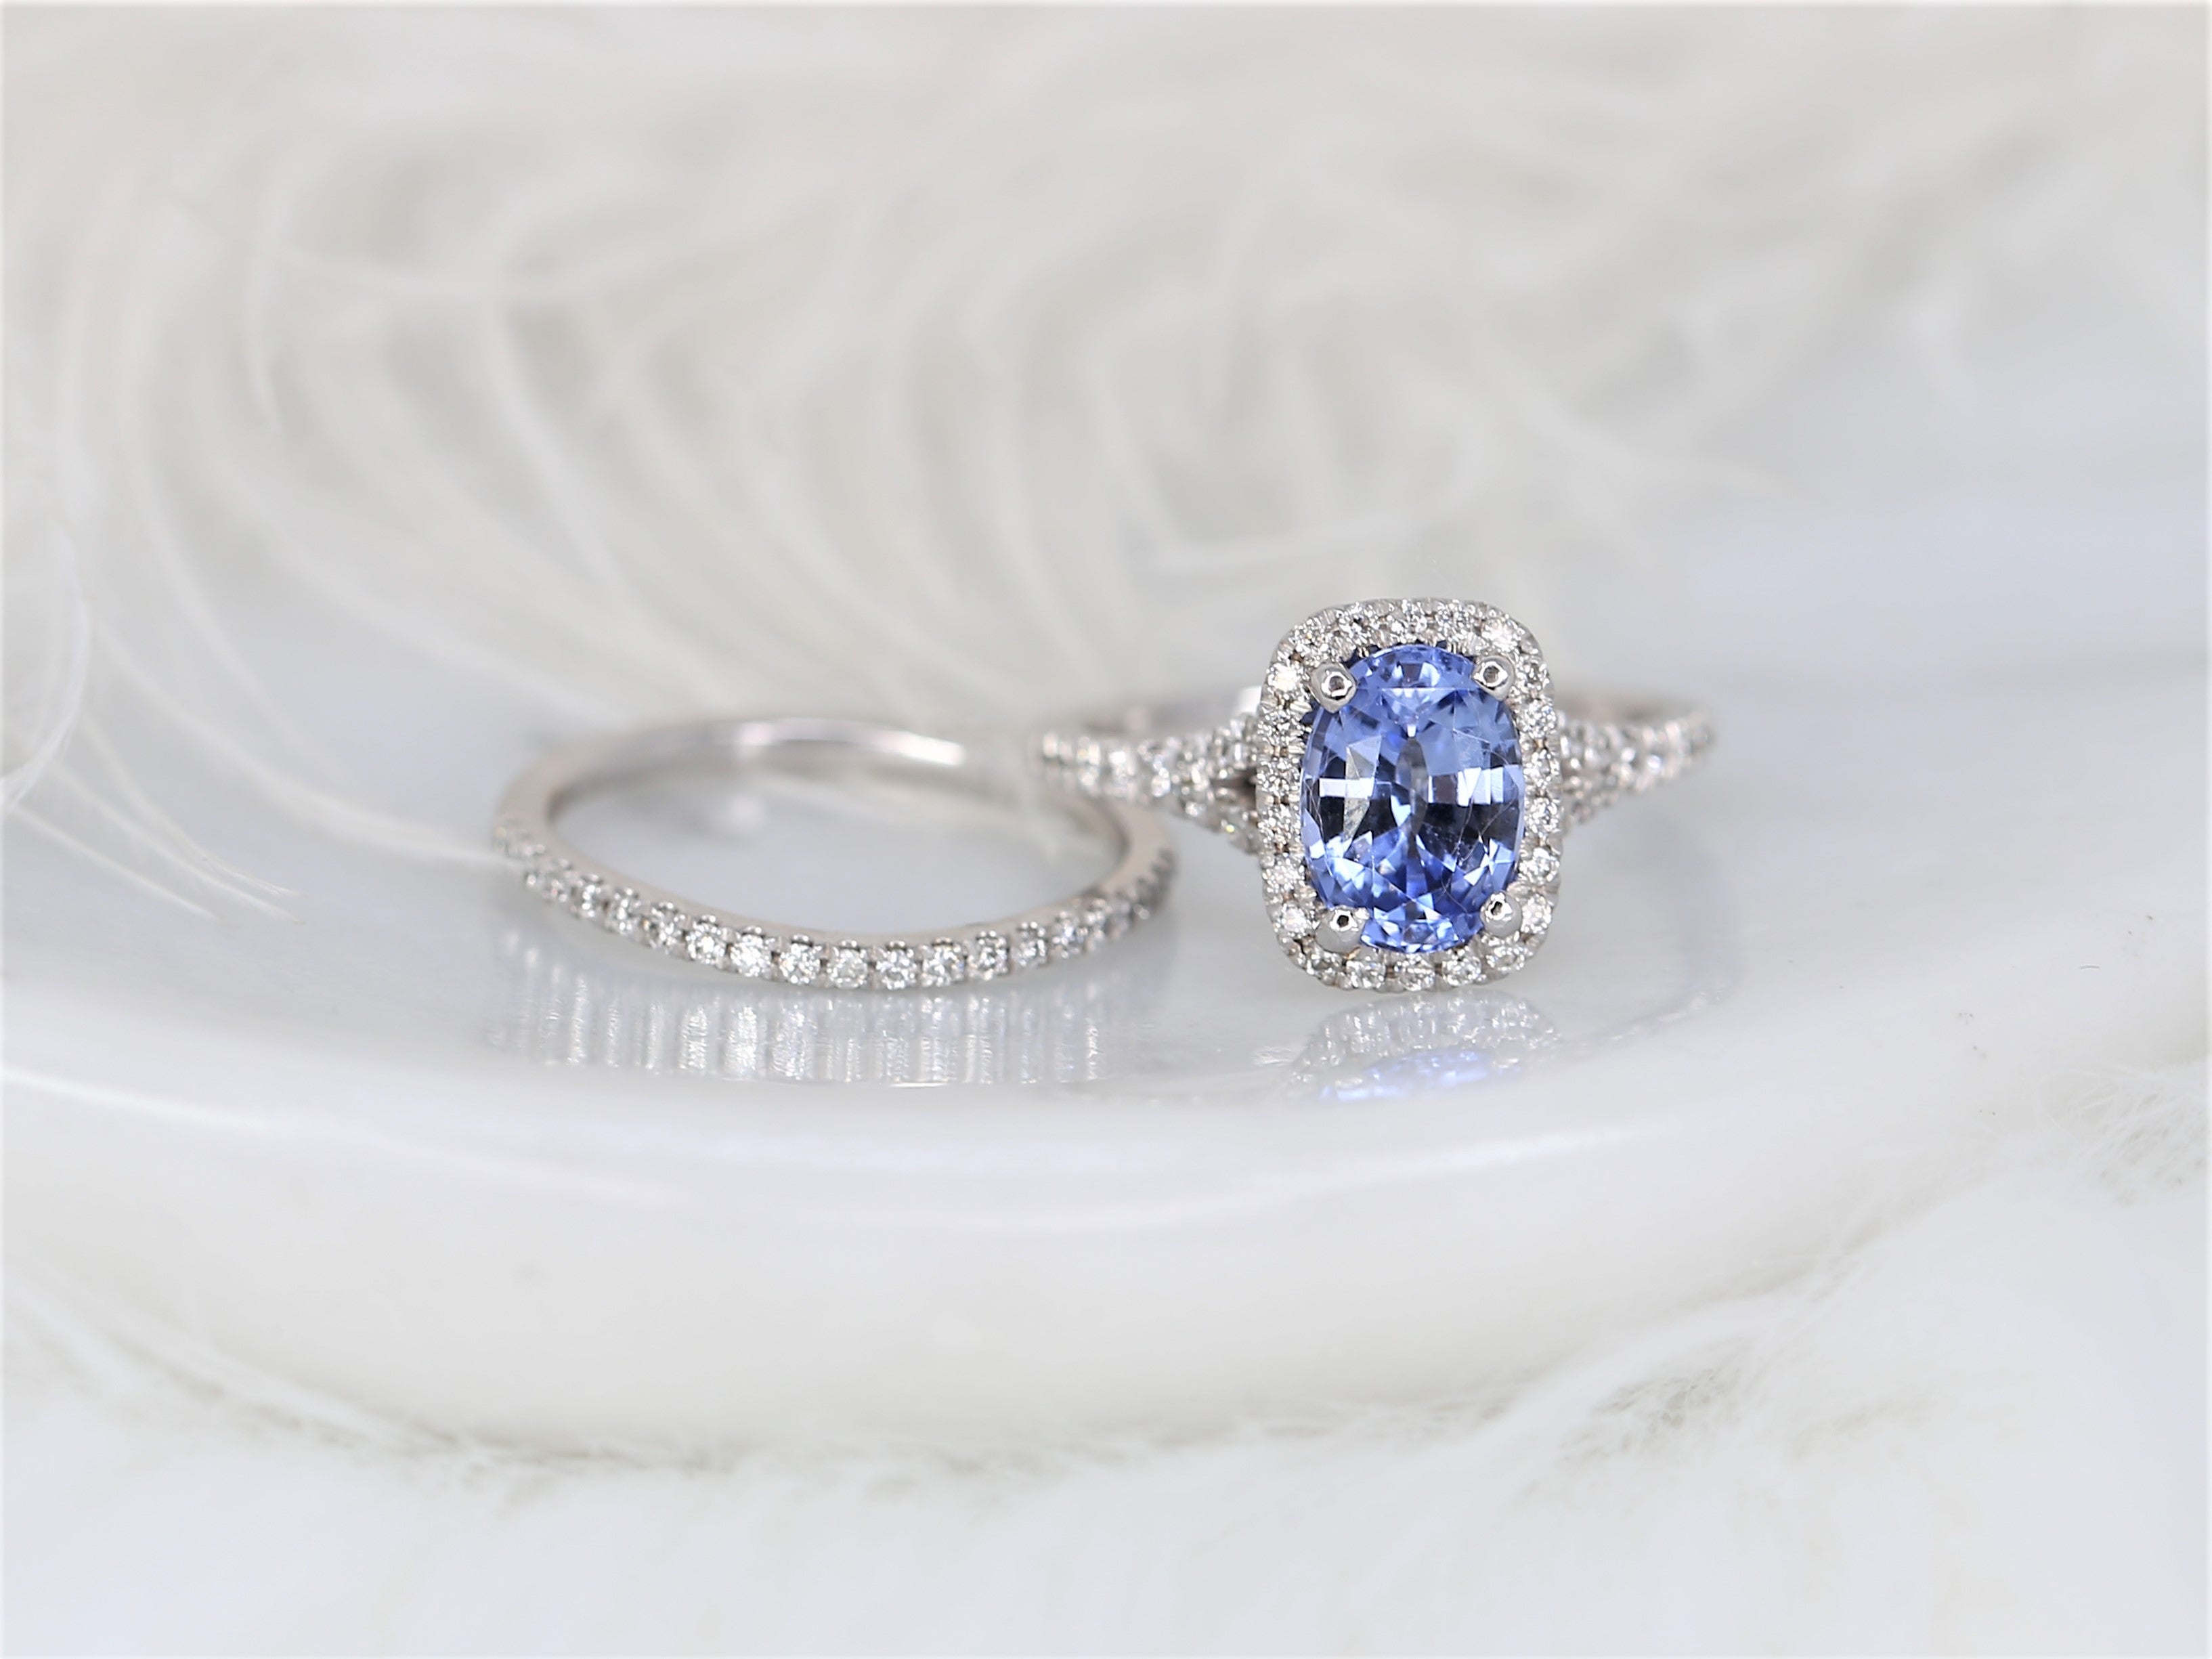 Wir präsentieren unseren exquisiten kornblumenblauen Saphir-Halo-Ring mit einem faszinierenden Mermaid Split Shank Design. Dieses einzigartige Brautset zeigt einen atemberaubenden kornblumenblauen Saphir, der von einem Halo aus funkelnden